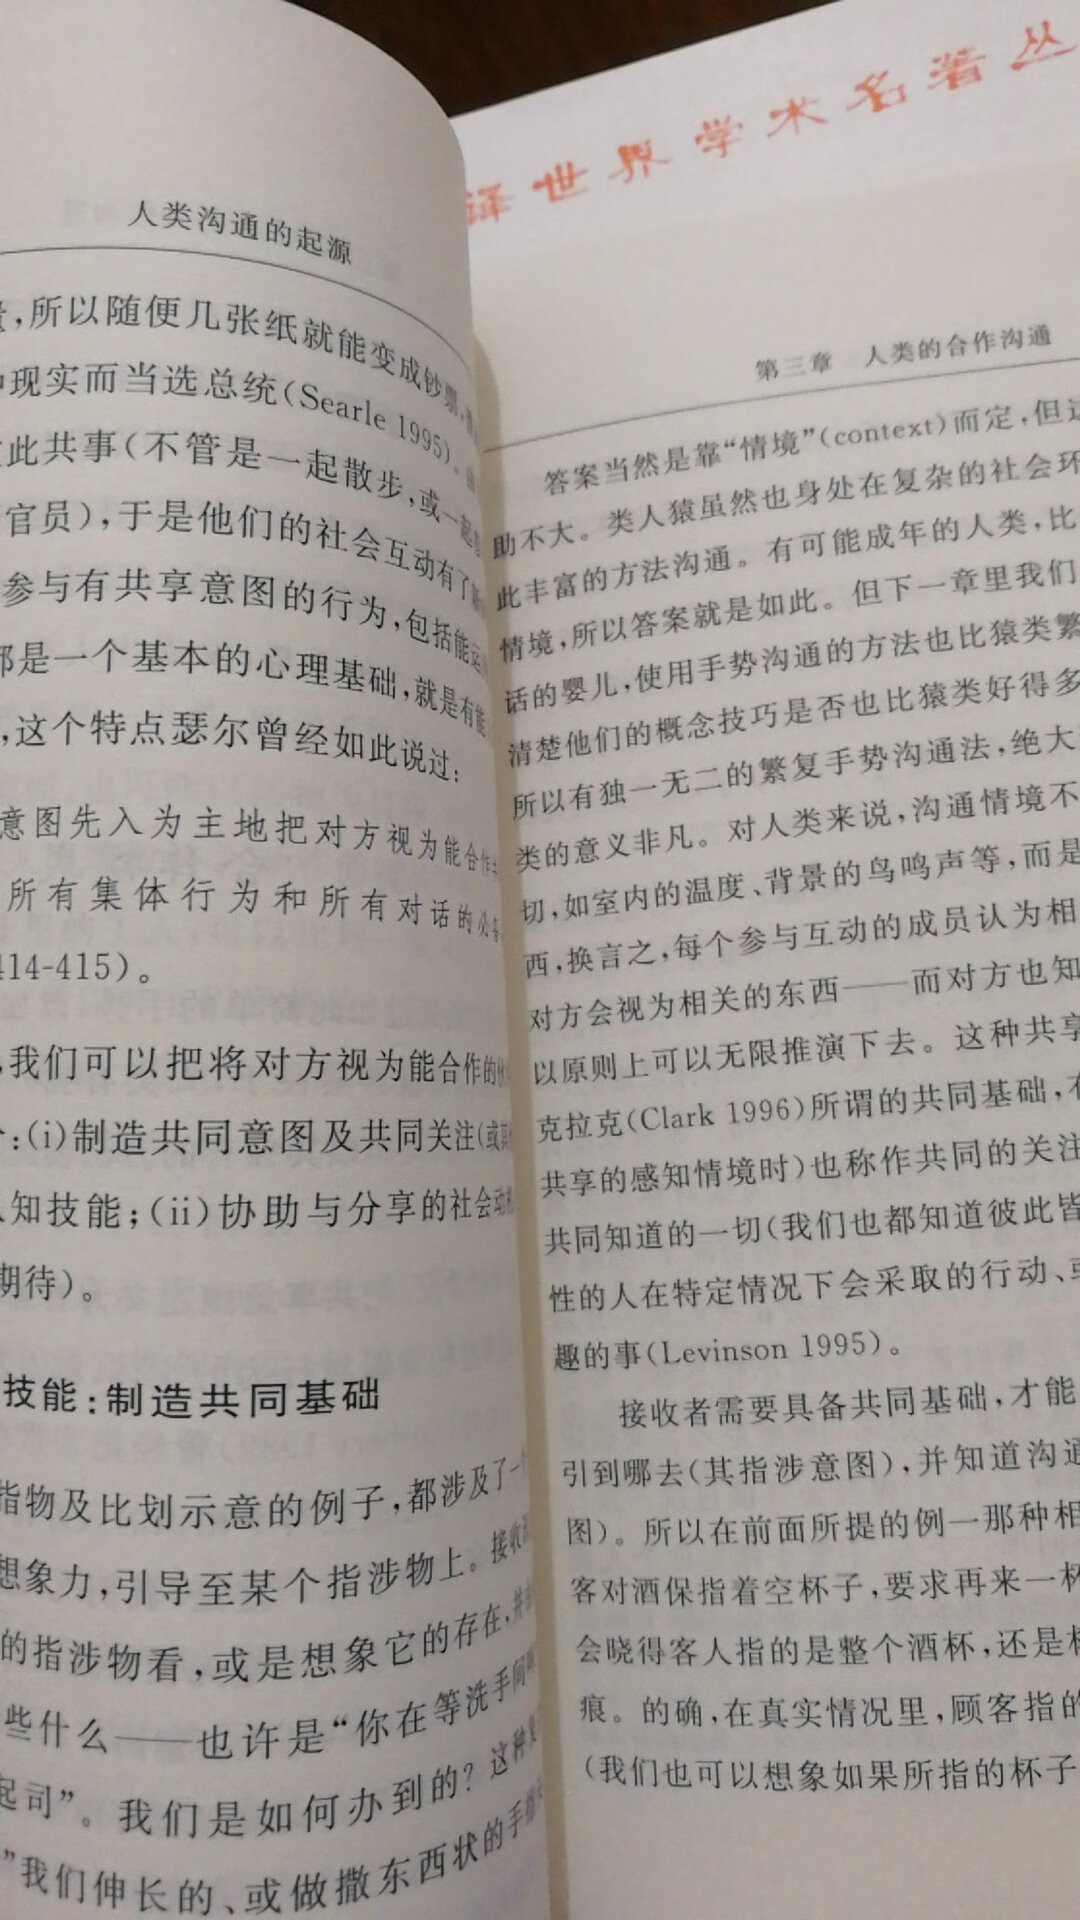 汉译世界学术名著丛书，经典封面排版，字比起其他册的稍小。